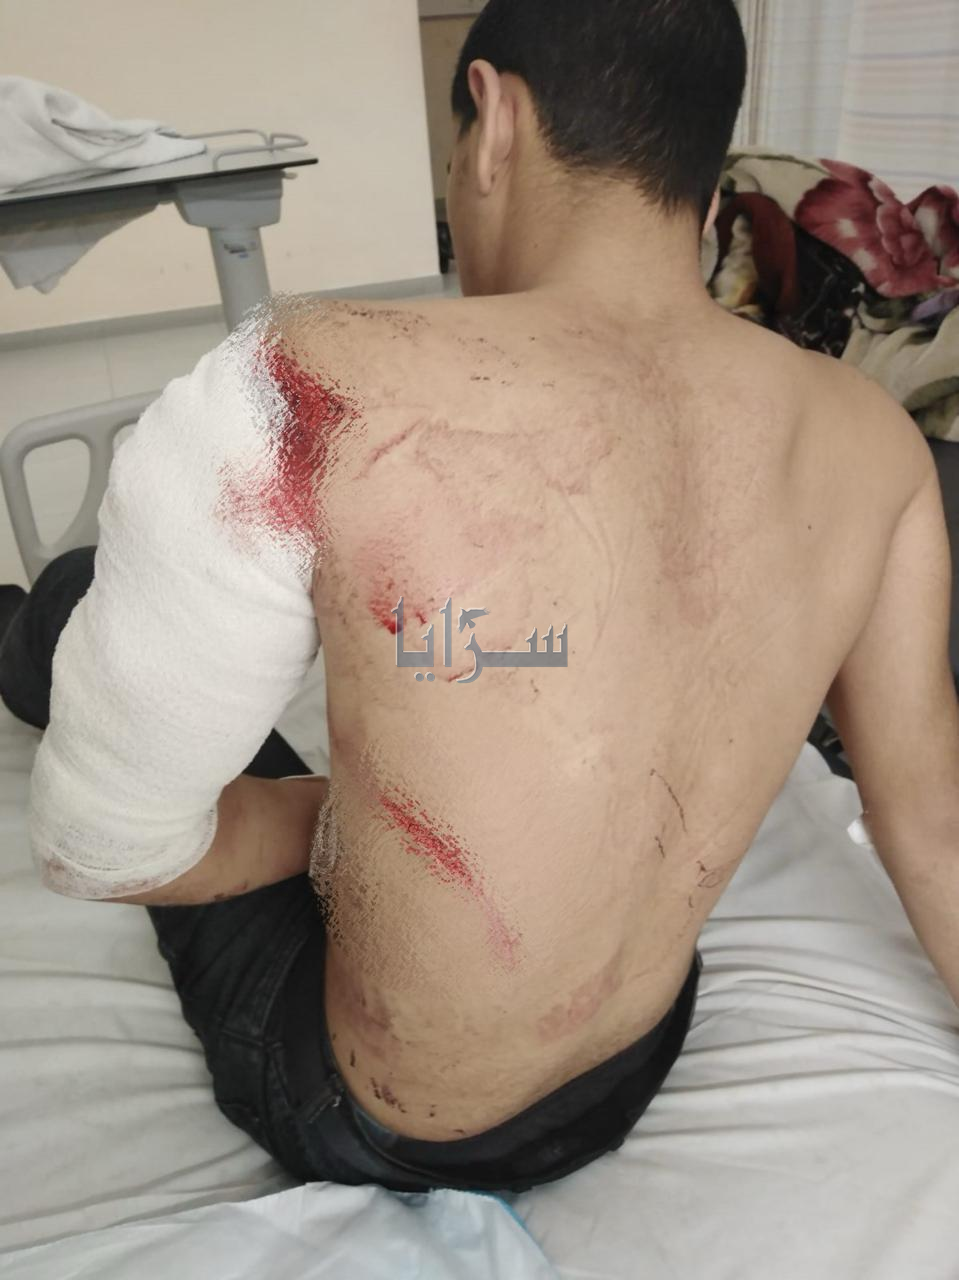 "أصيب بـ 75 غرزة" ..  طعن حدث في منطقة ابو علندا - صور صادمة 